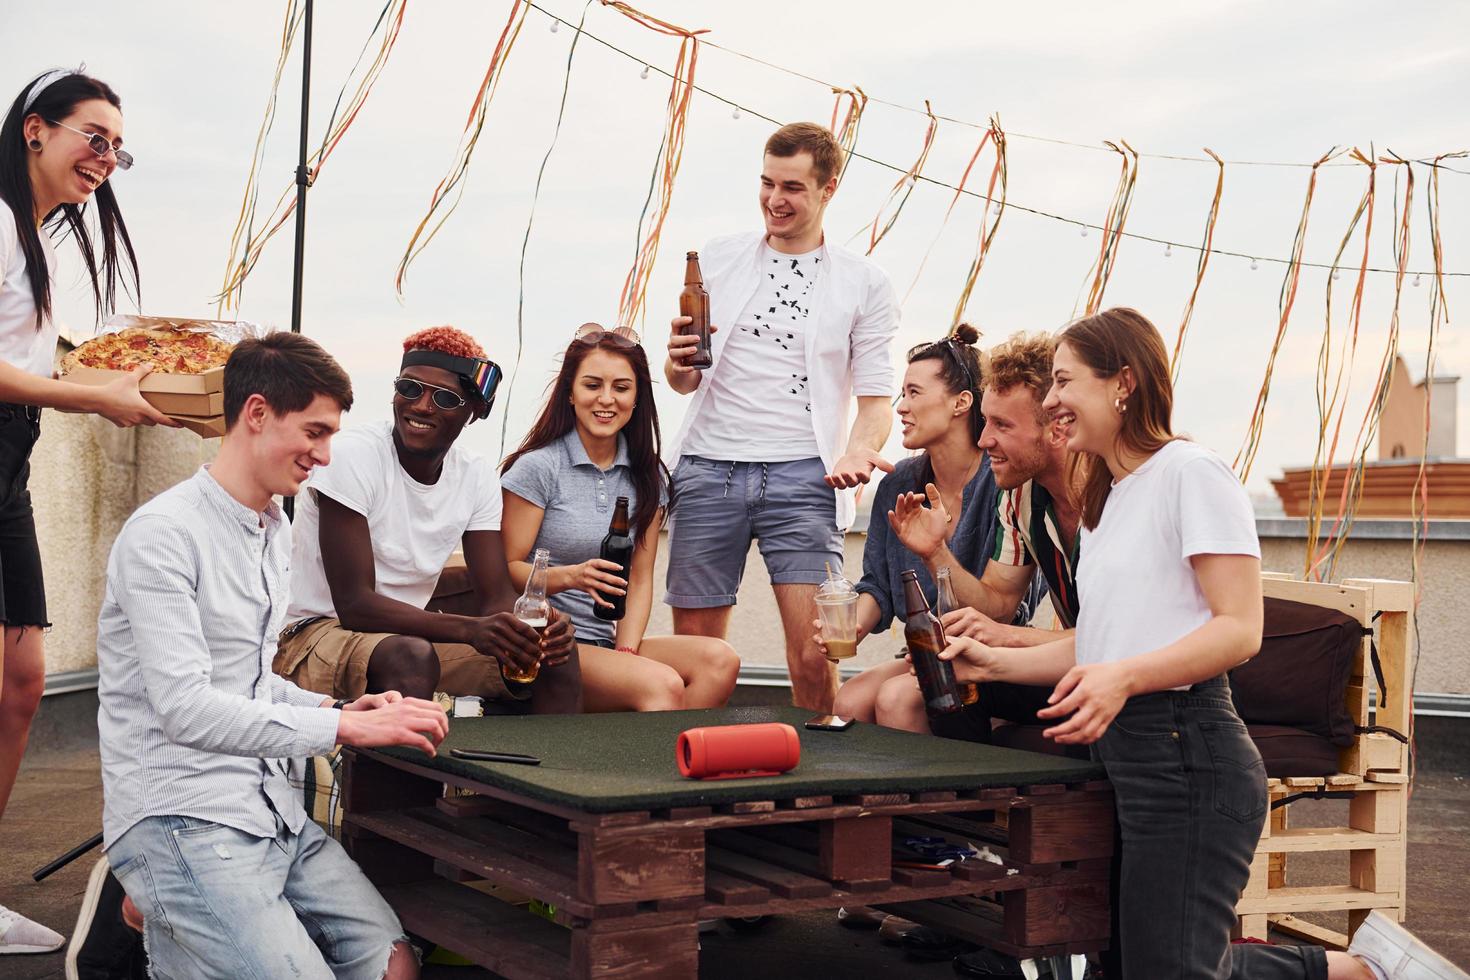 avec de délicieuses pizzas. un groupe de jeunes en vêtements décontractés fait la fête ensemble sur le toit pendant la journée photo